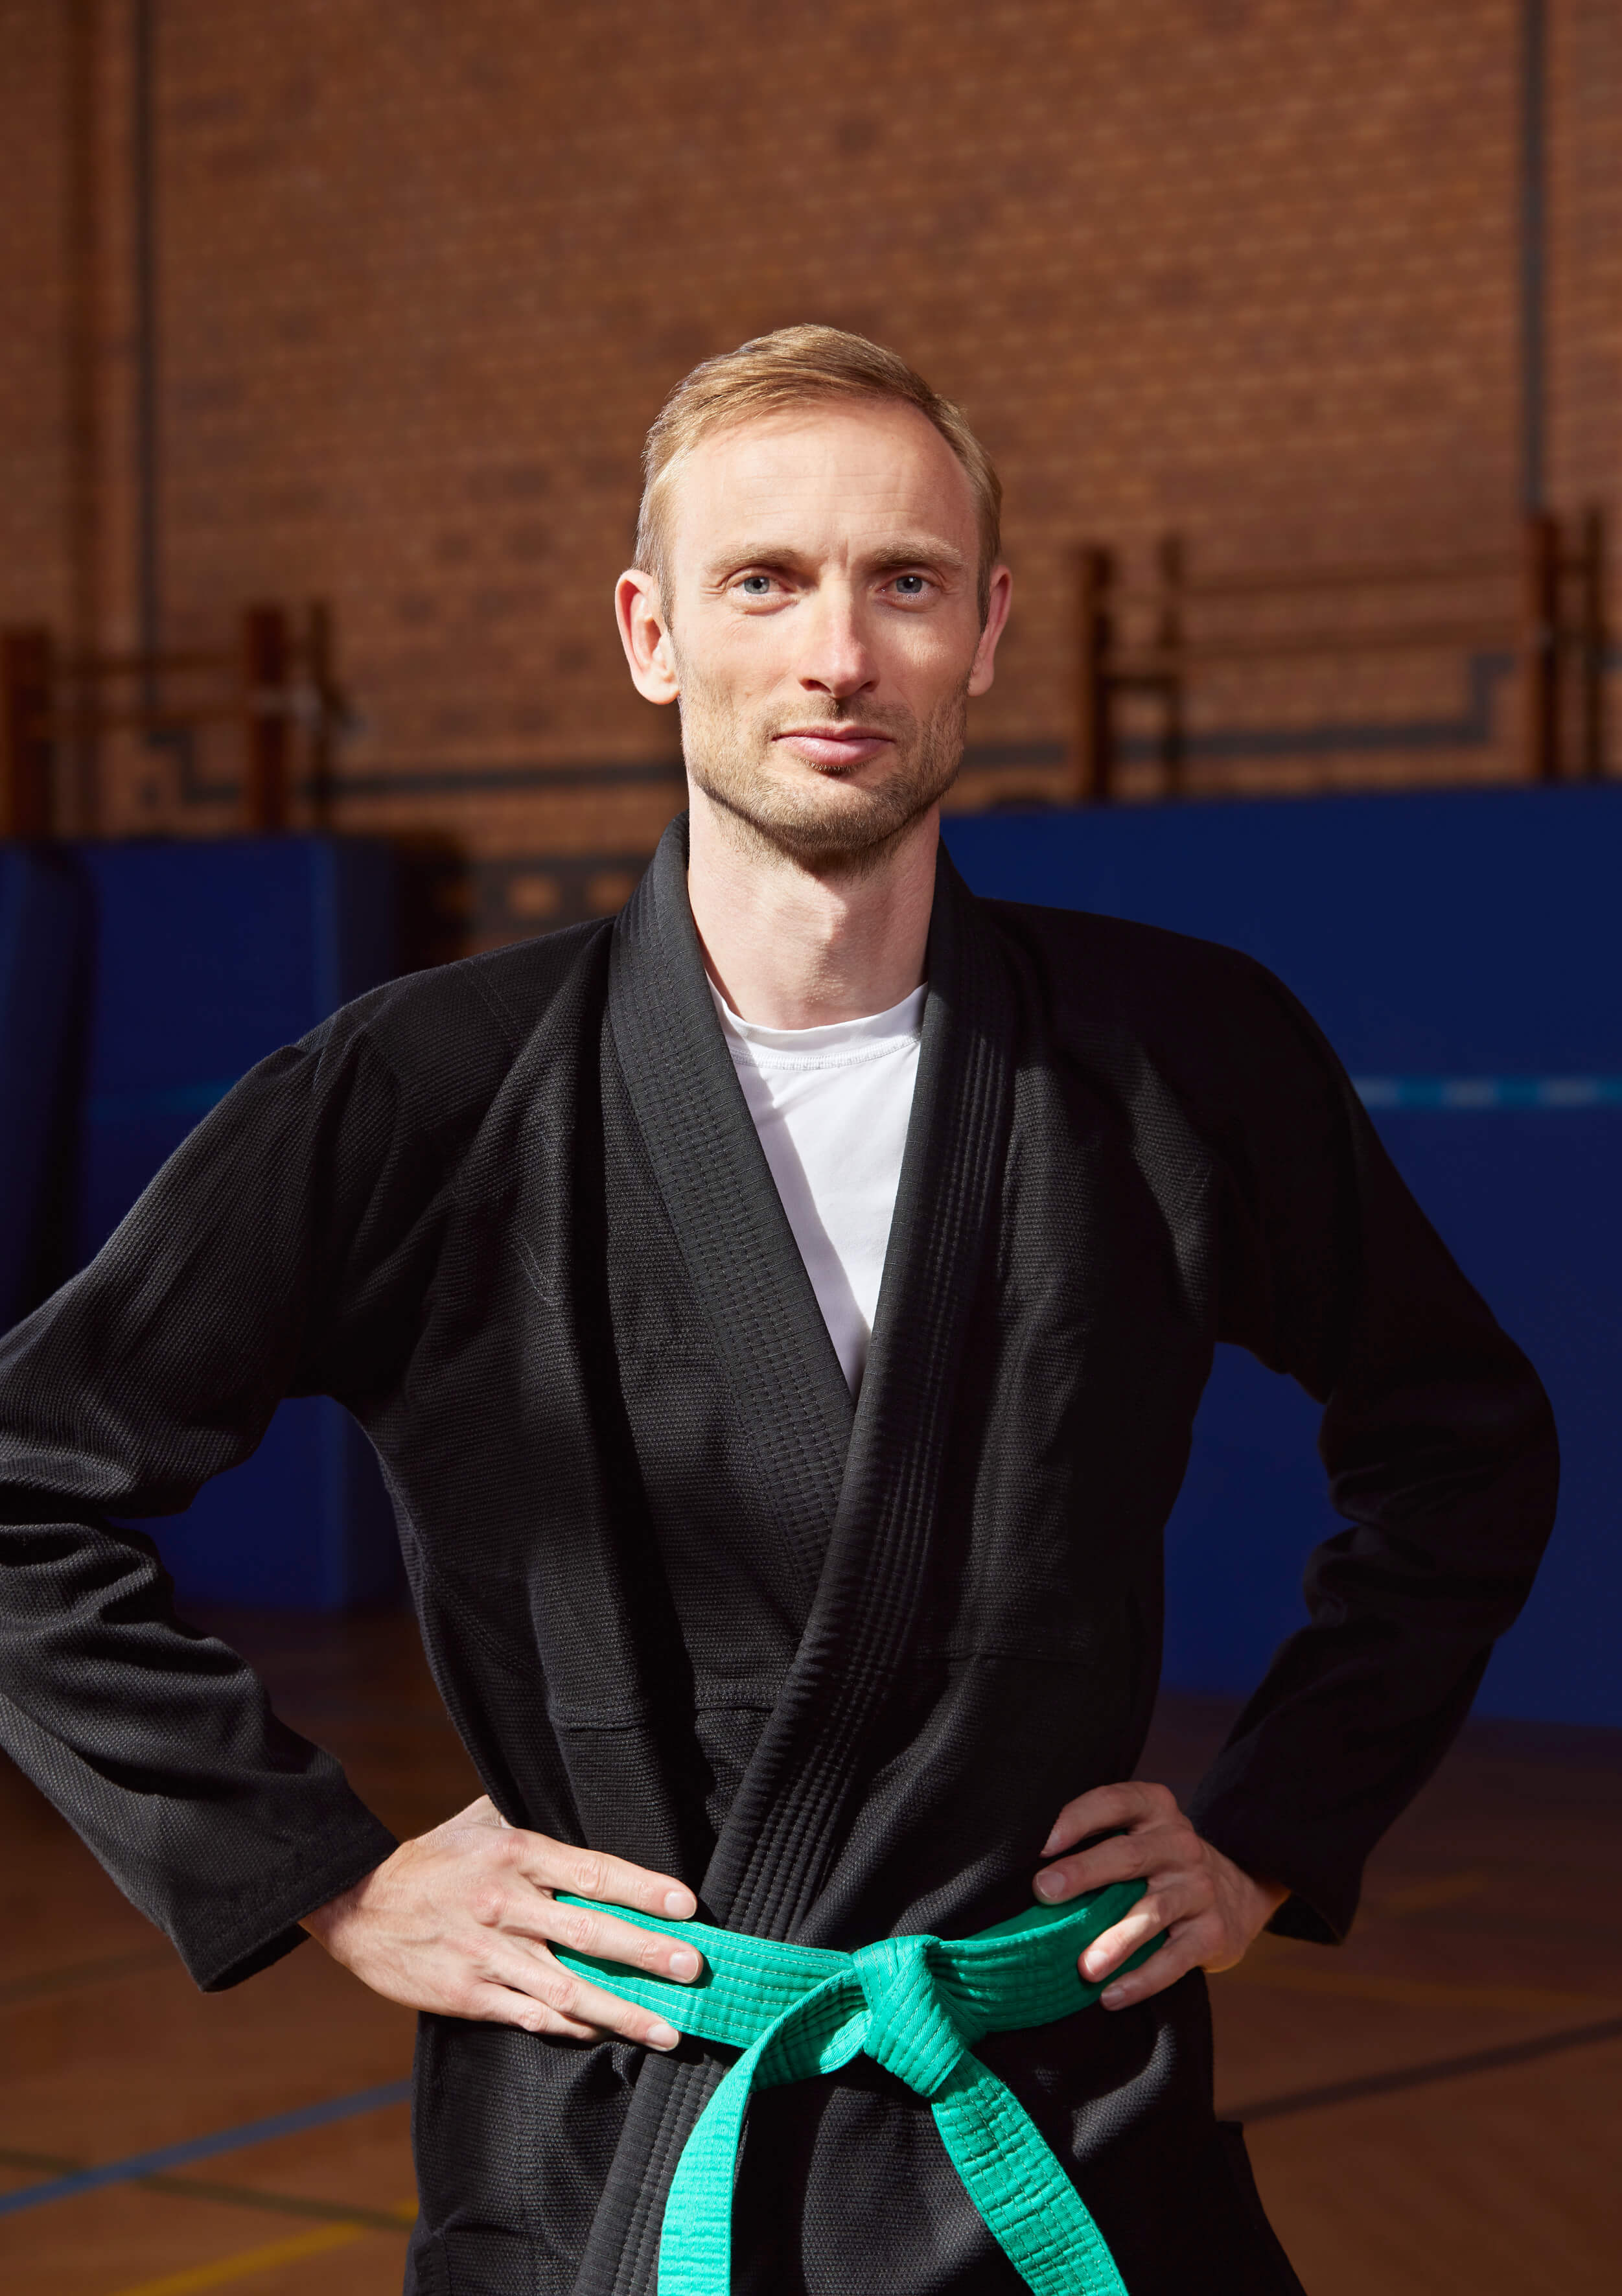 Eine Person mit einem Ju Jutsu Anzug, grünen Gürtel und blonden Haaren steht in einem Trainingsraum vor blauen Fußmatten und schaut in die Kamera.